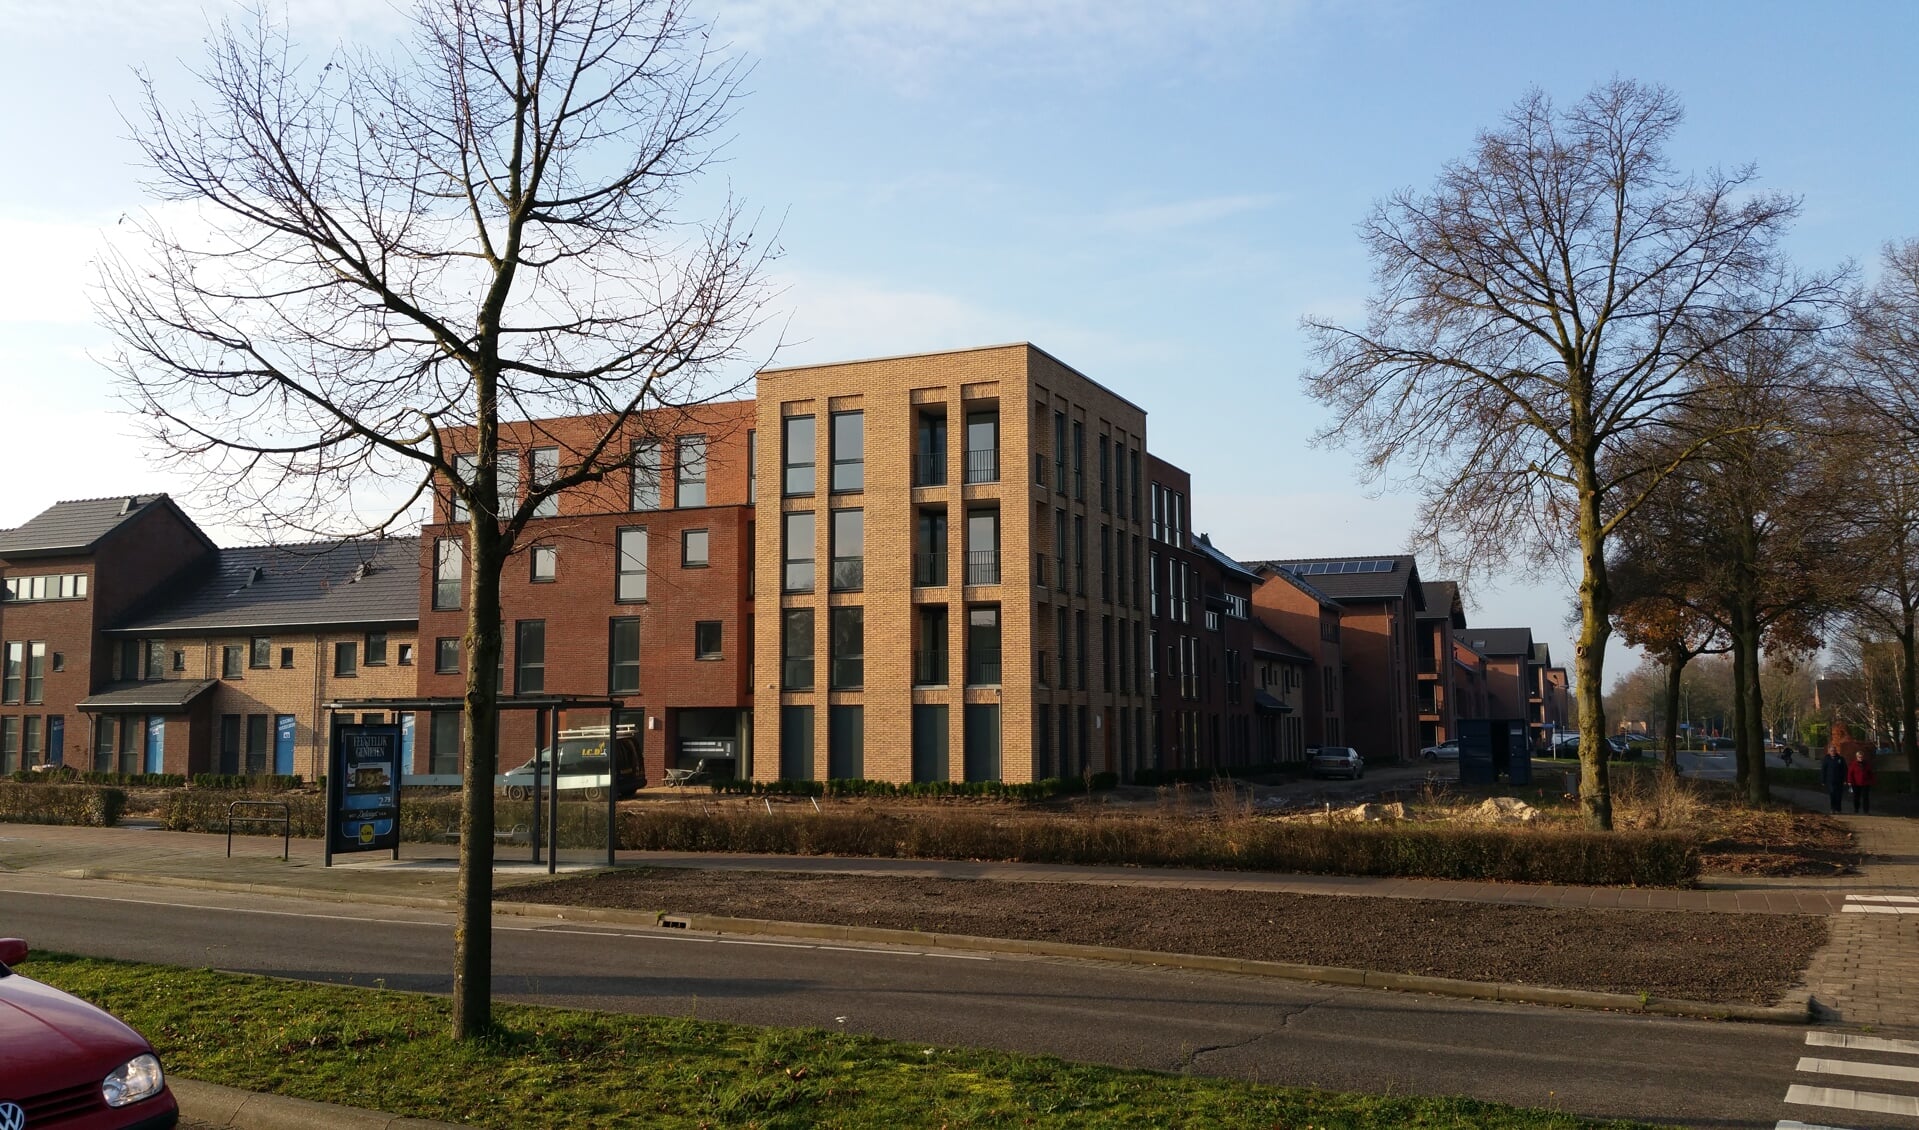 Mooiland verhuurt onder meer appartementen in de Boxmeerse wijk Hofstede Elderom. (foto: Mooiland)